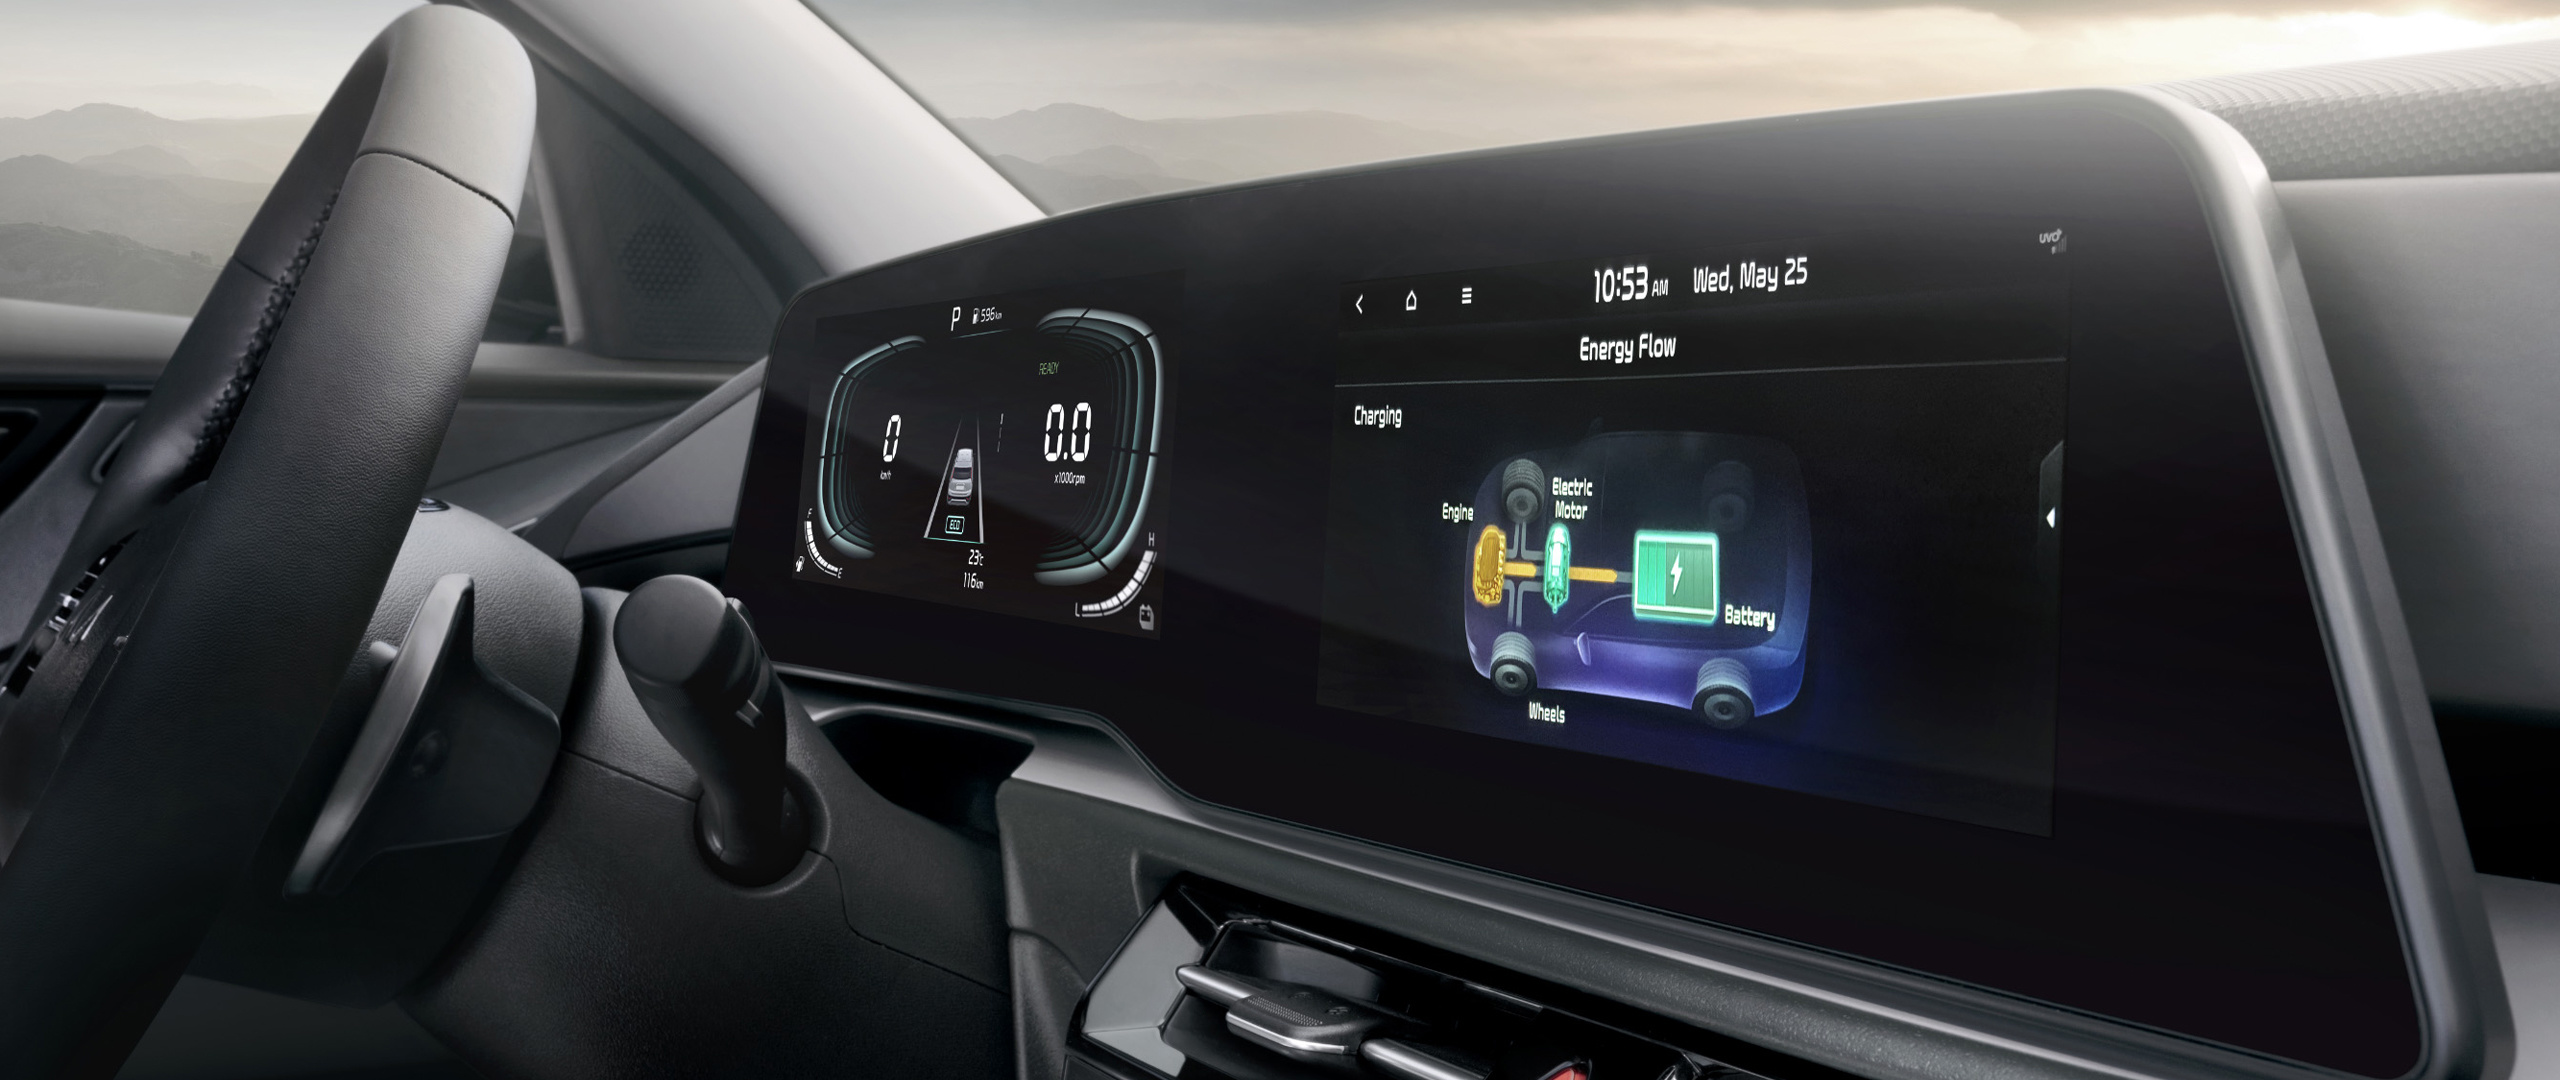 2023 Kia Niro Hybrid Interior Dual Panoramic Displays Close-Up